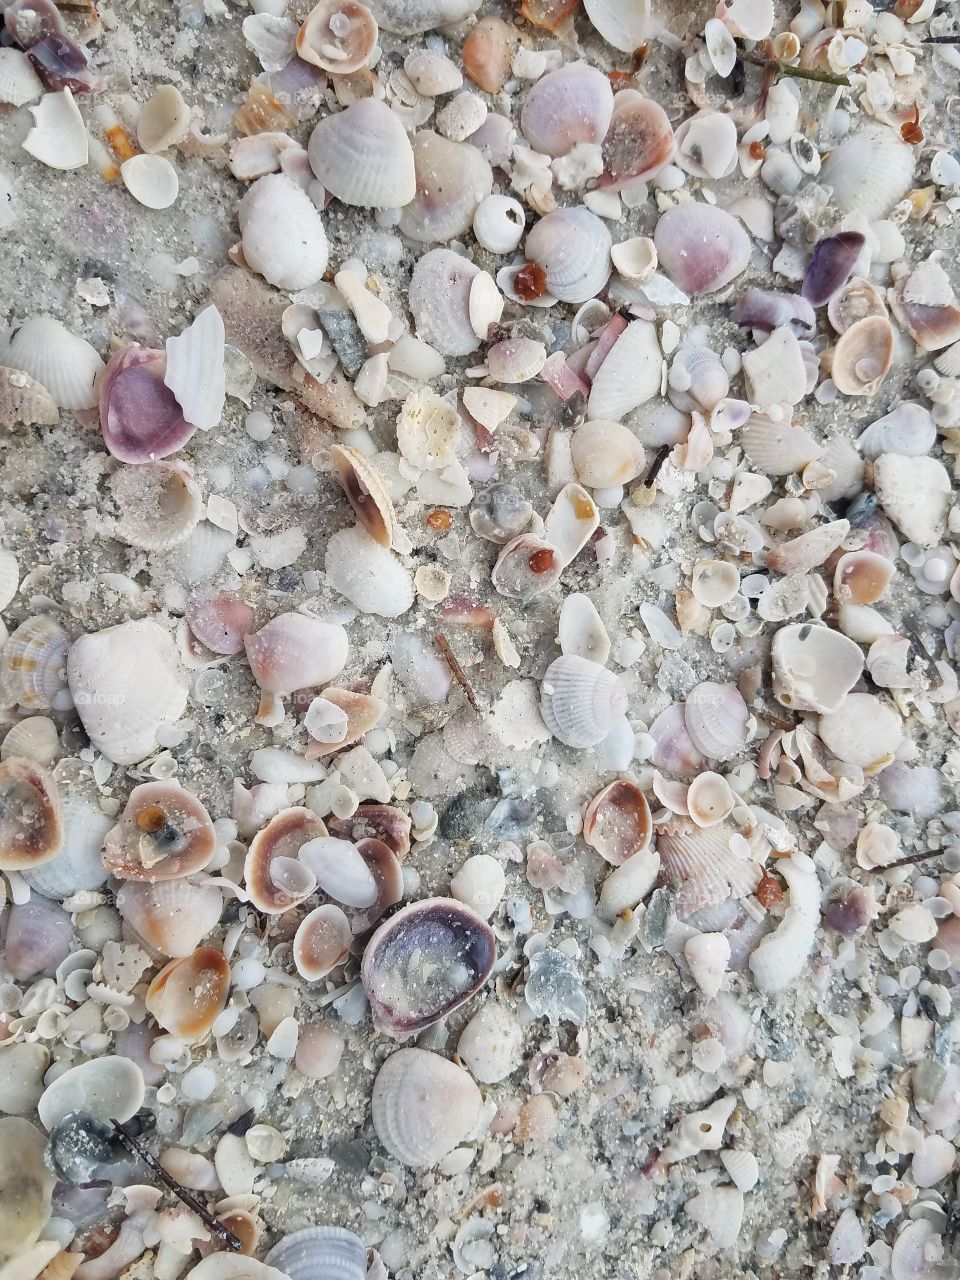 Weather seashell on beach